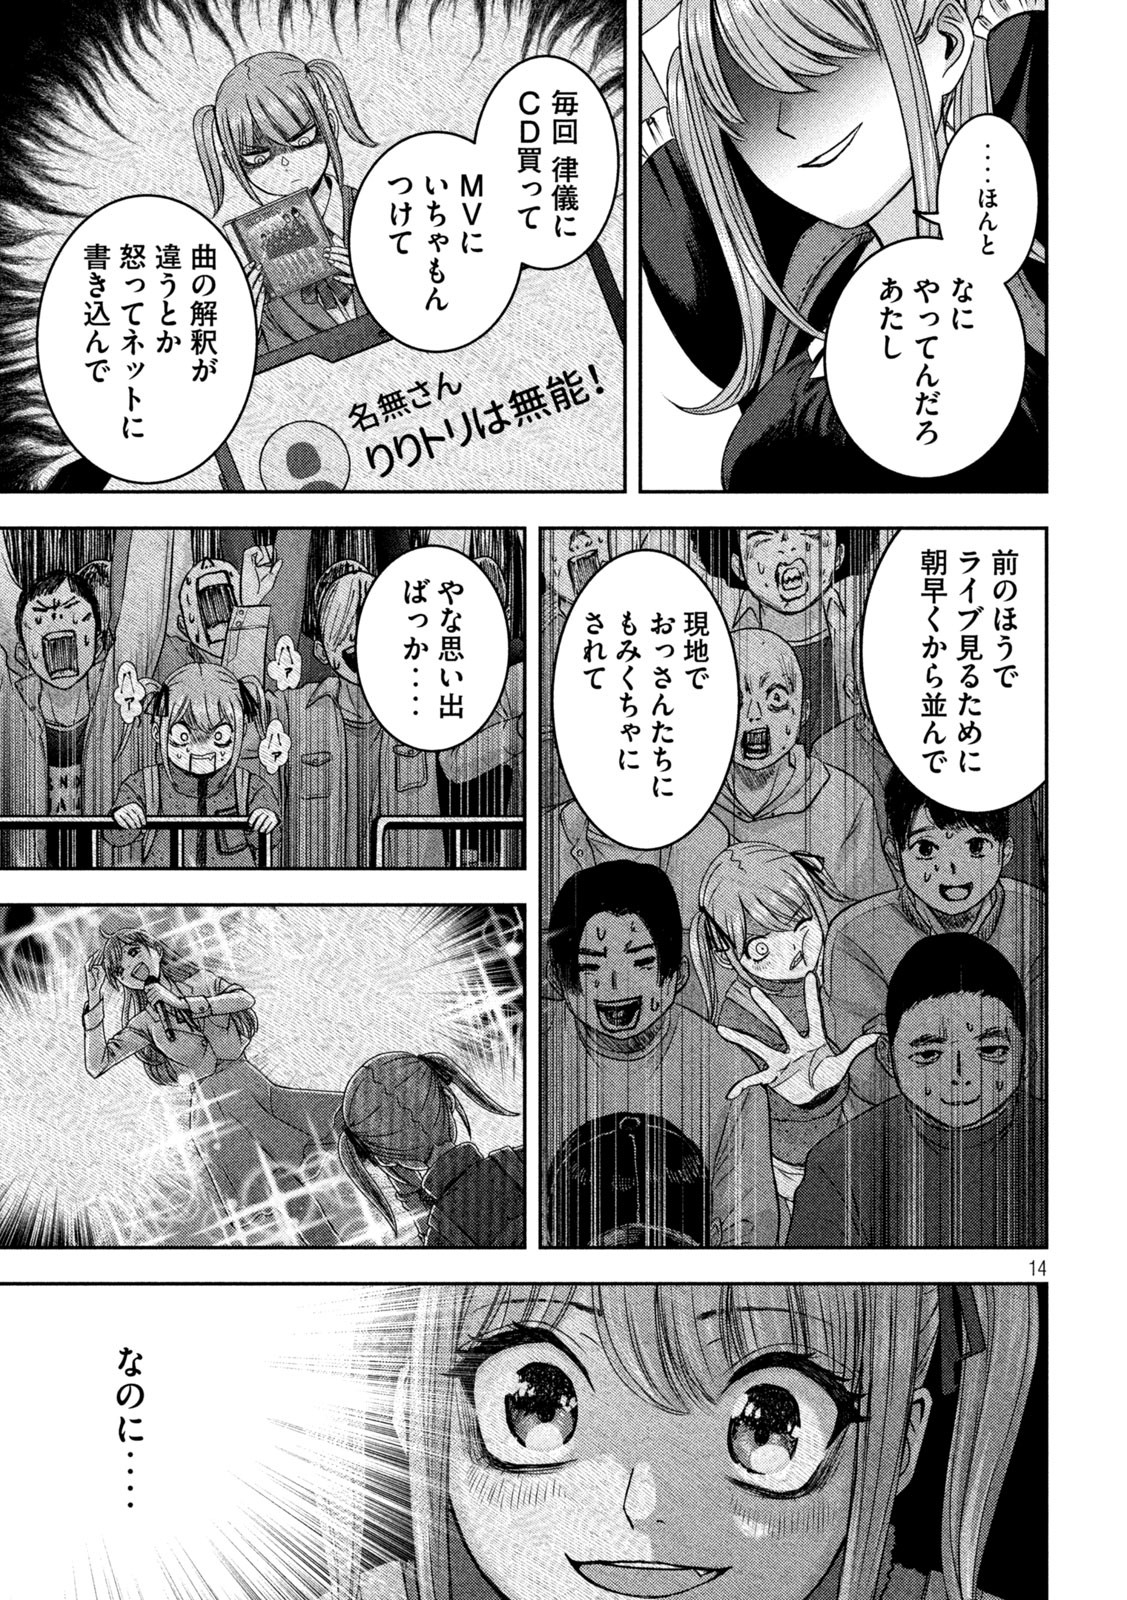 Watashi no Arika - Chapter 36 - Page 14